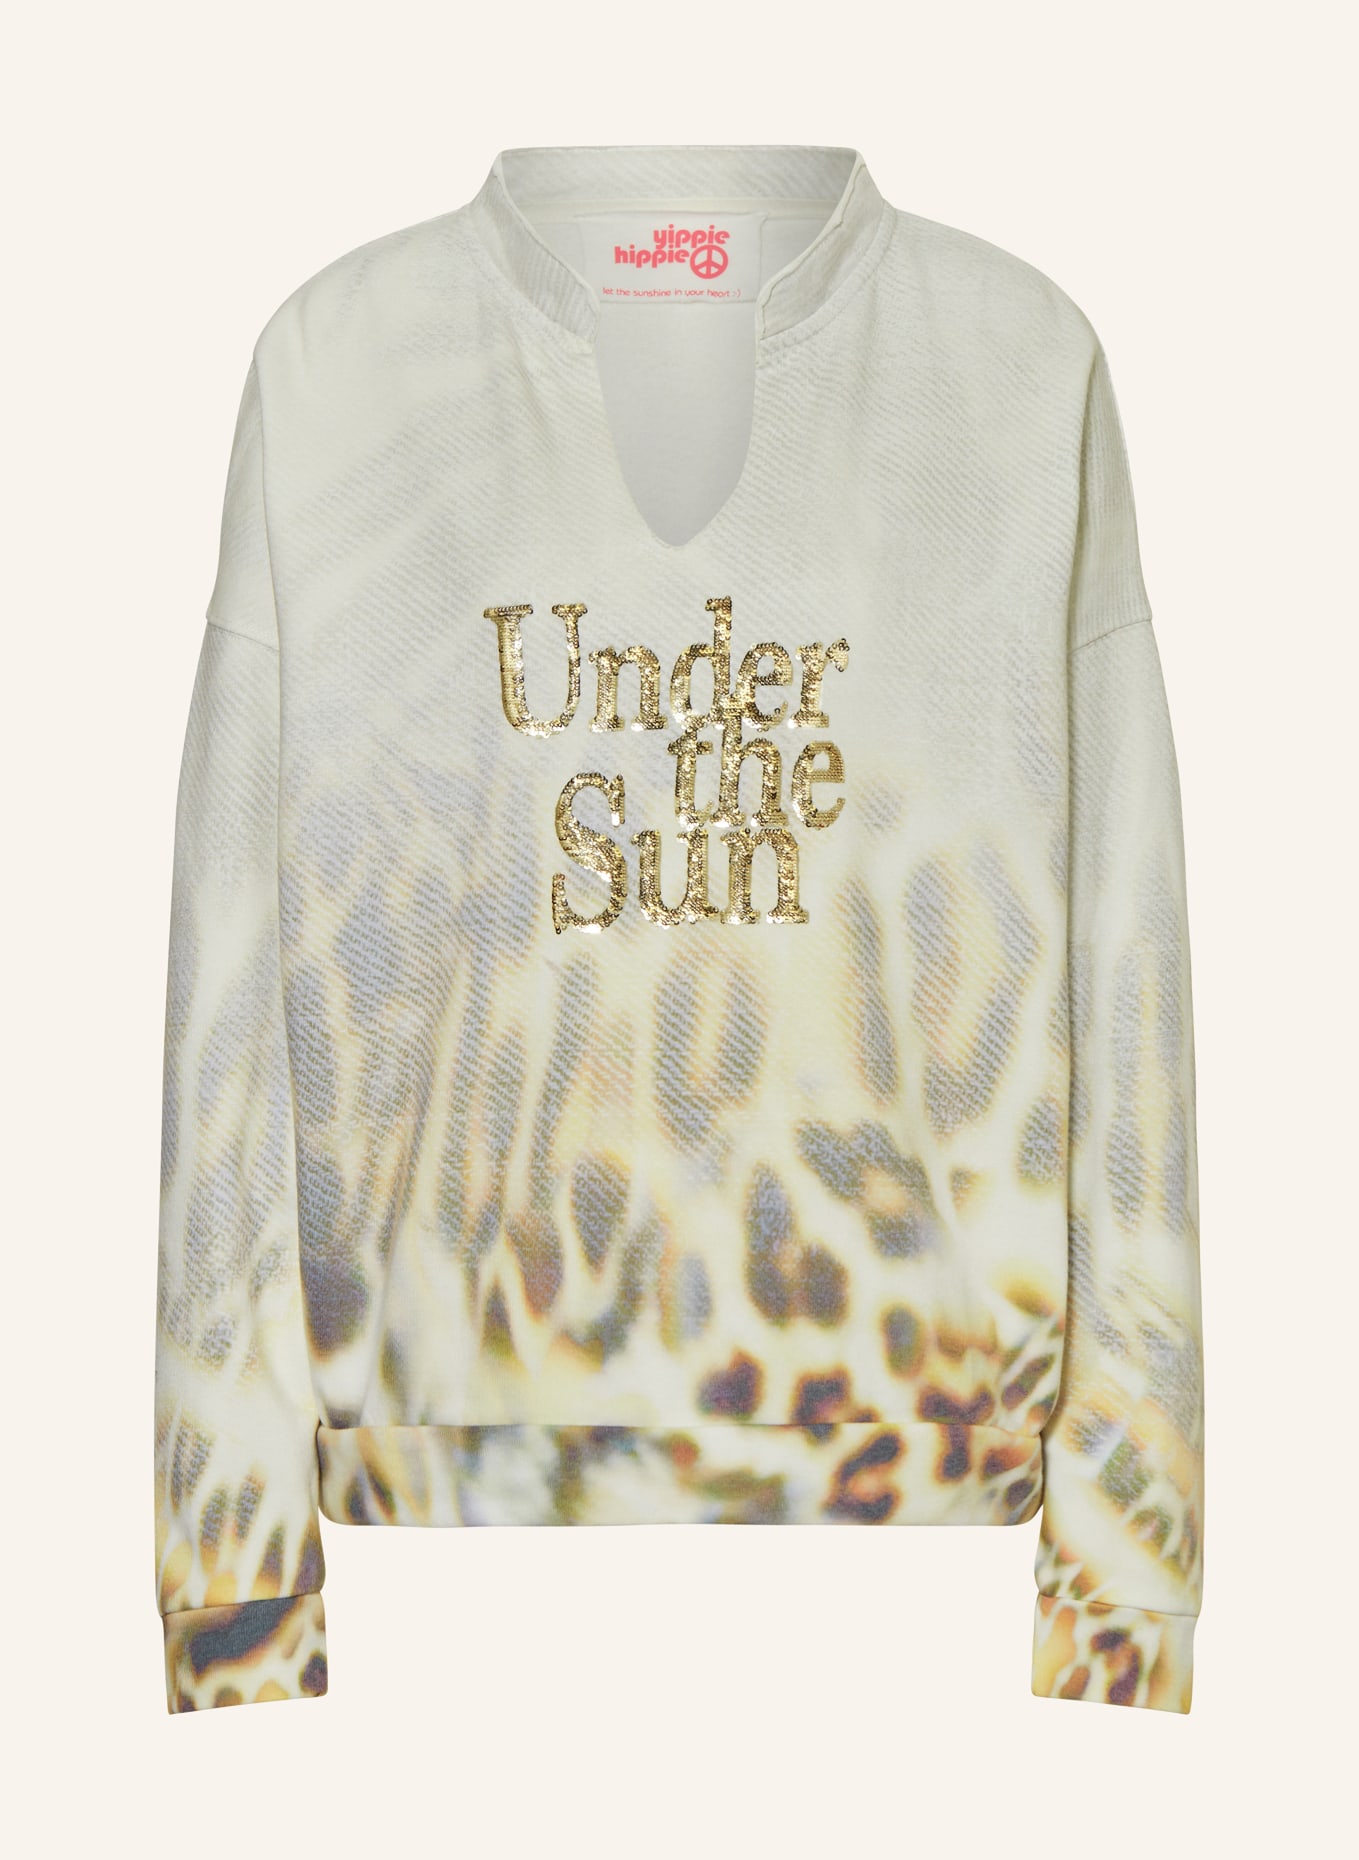 yippie hippie Sweatshirt mit Pailletten, Farbe: HELLGRAU/ HELLGELB/ DUNKELGRAU (Bild 1)